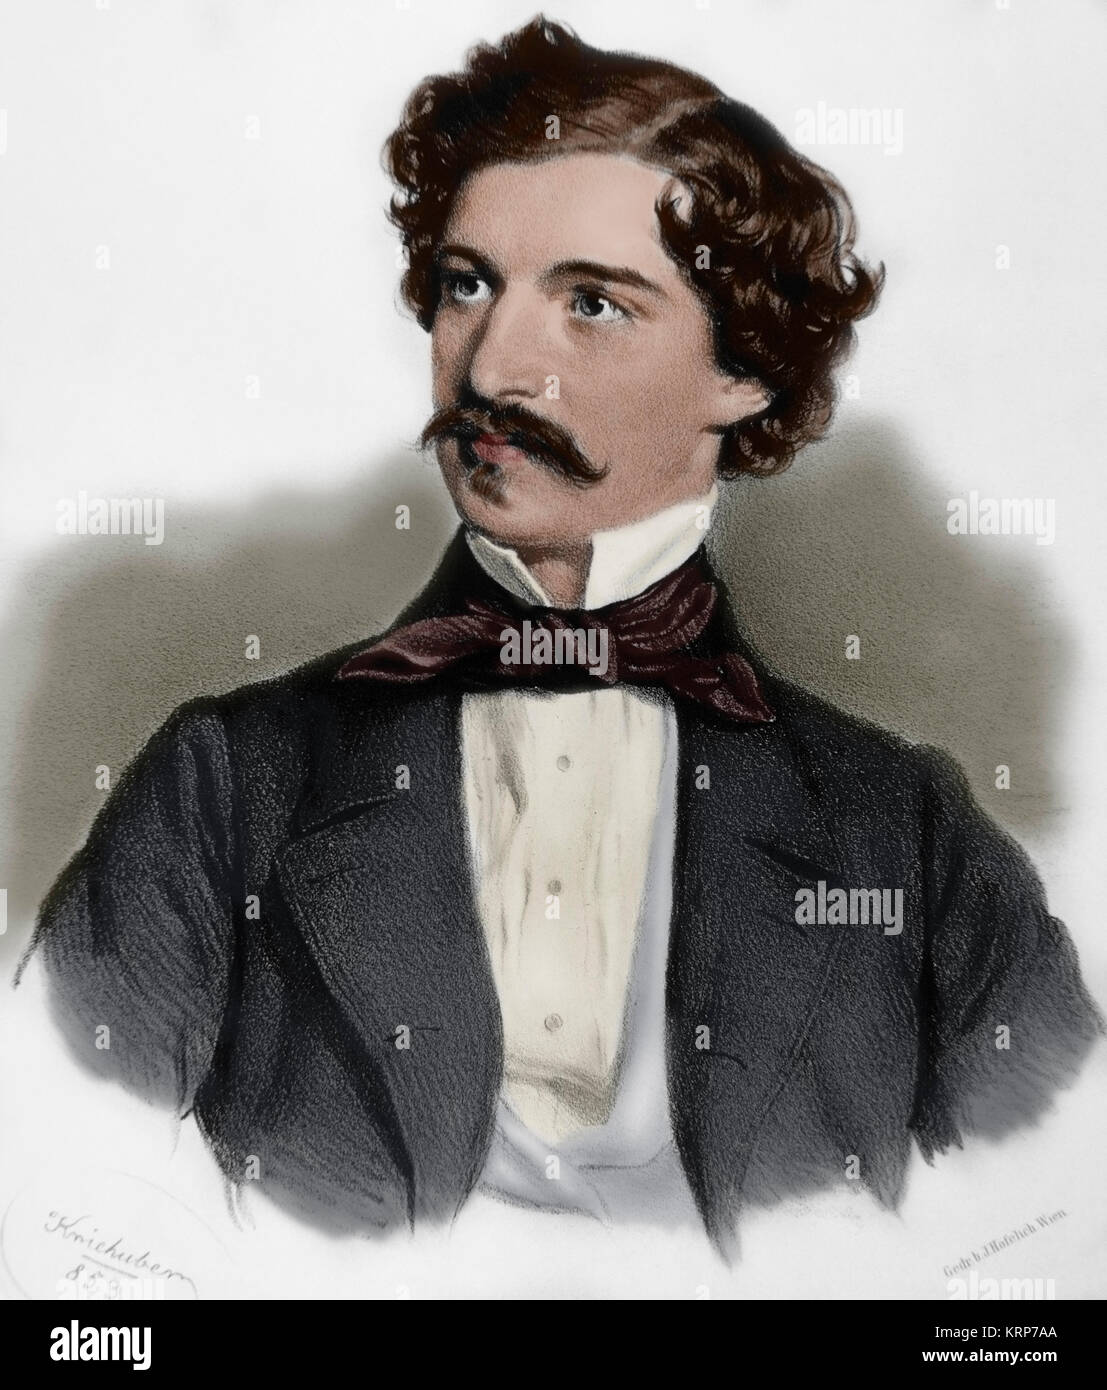 Johann Strauss II (1825-1899). Österreichischen Komponisten der leichten Musik. Porträt. Kupferstich von Joseph Kriehuber (1800-1876), 1853. Gefärbt. Stockfoto